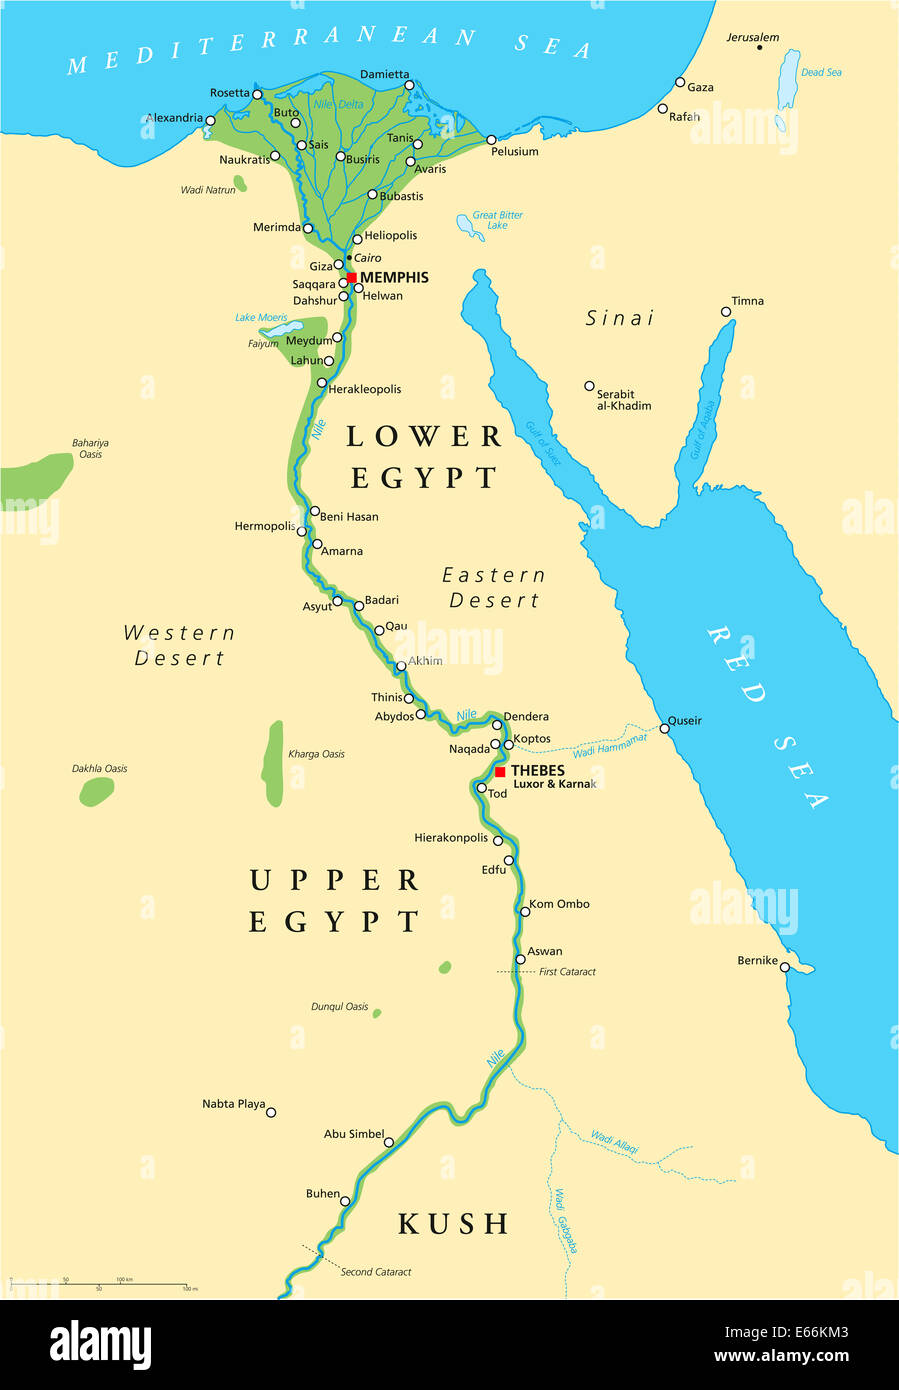 mapa-del-antiguo-egipto-mapa-historico-del-antiguo-egipto-con-puntos-de-interes-turistico-mas-...jpg